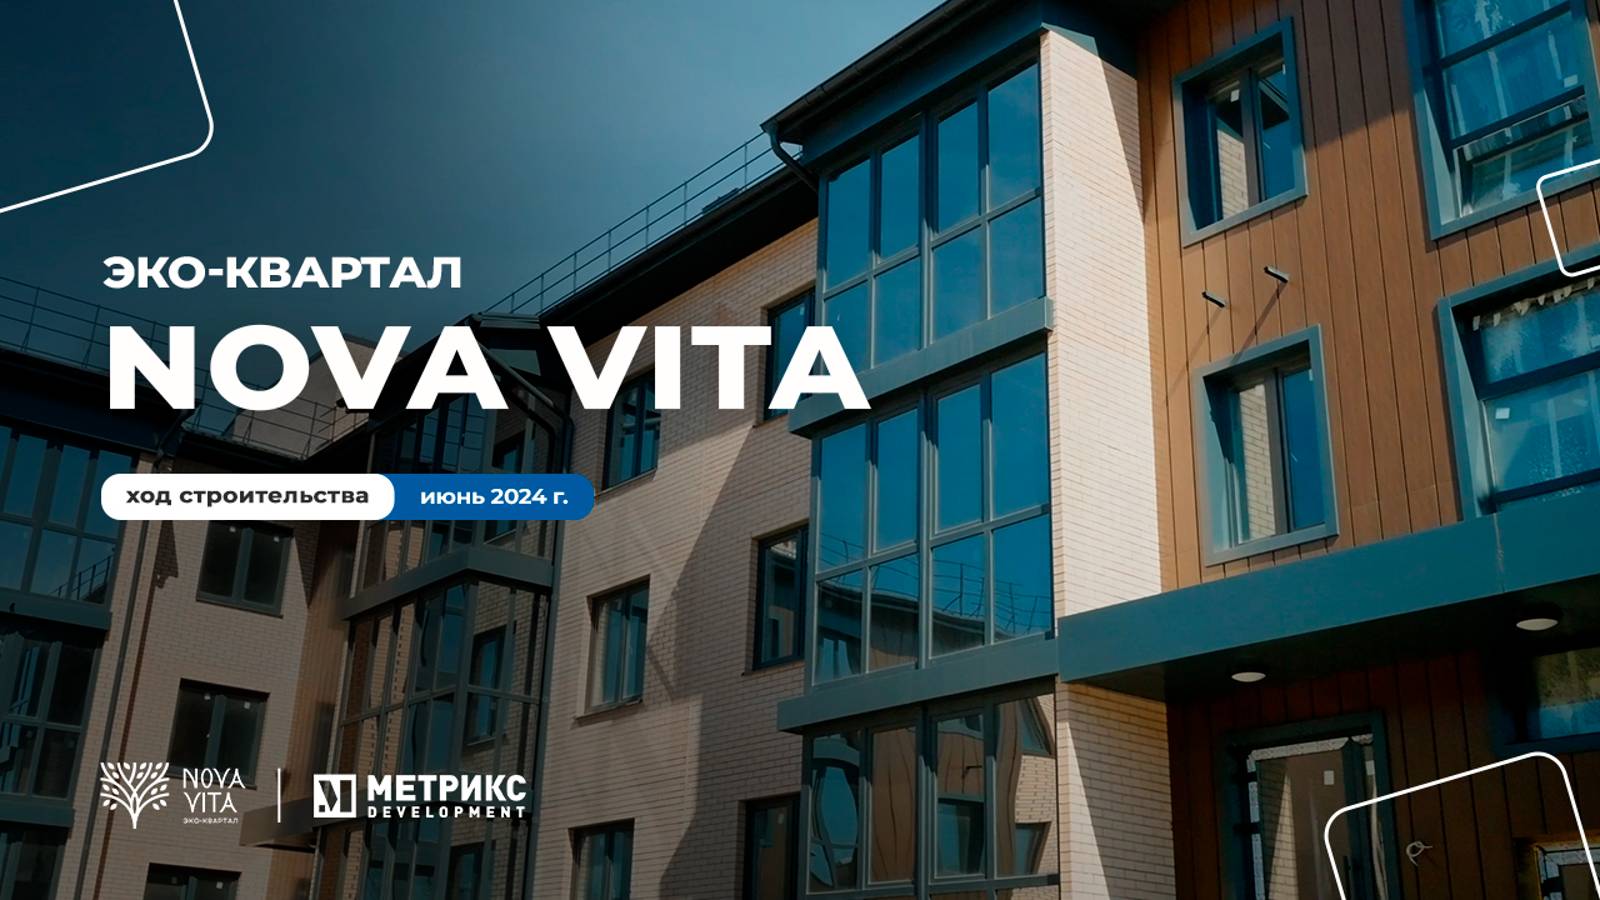 Долгожданная рубрика — ход строительства ⚒
Эко-квартал Nova Vita 🍃